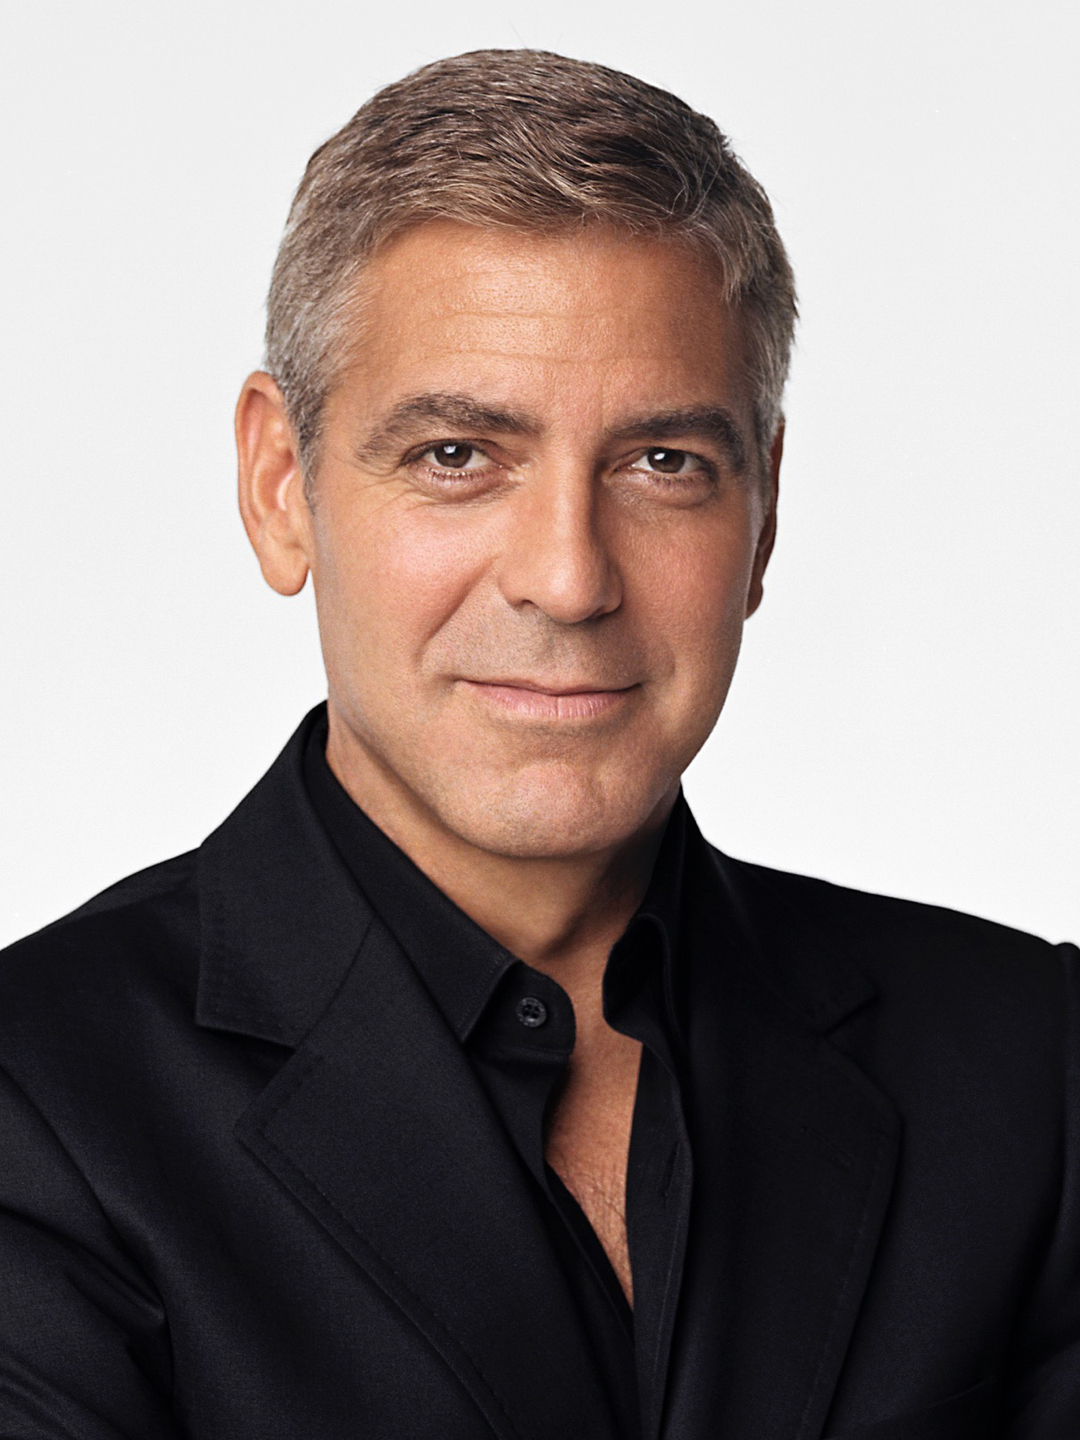 George Clooney upbringing